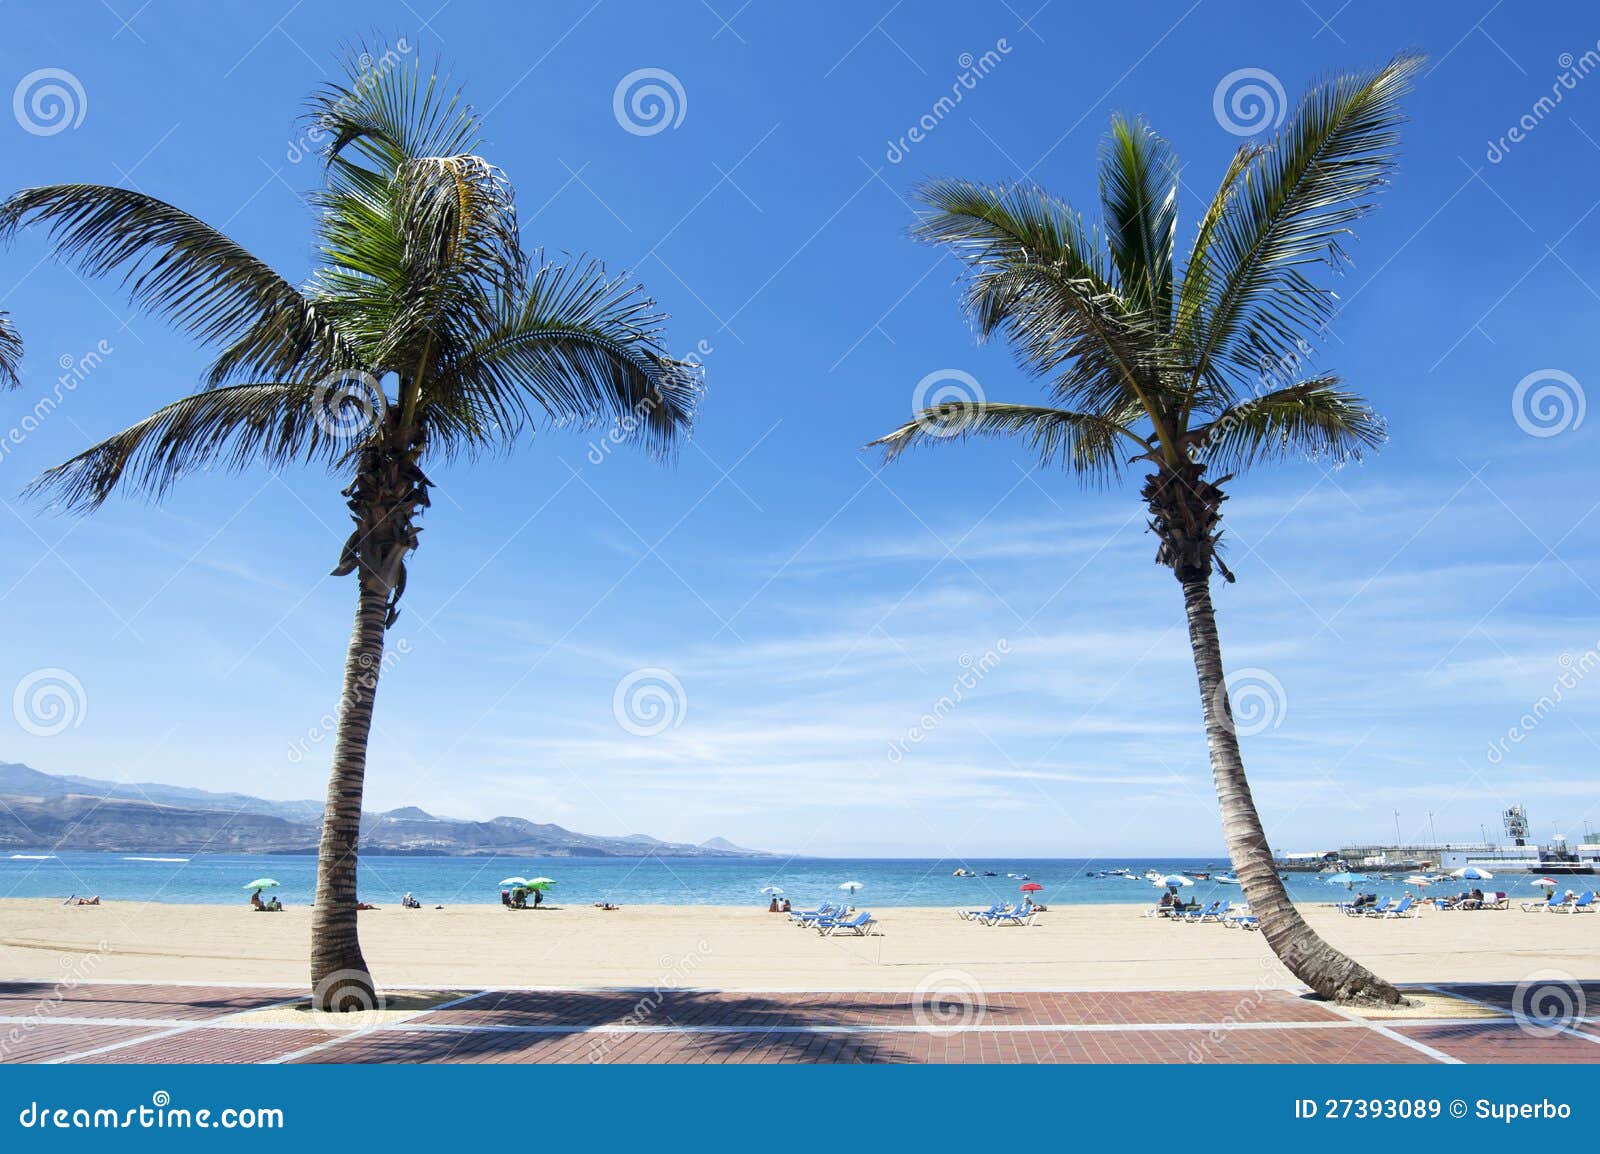 canteras beach, las palmas de gran canaria, spain